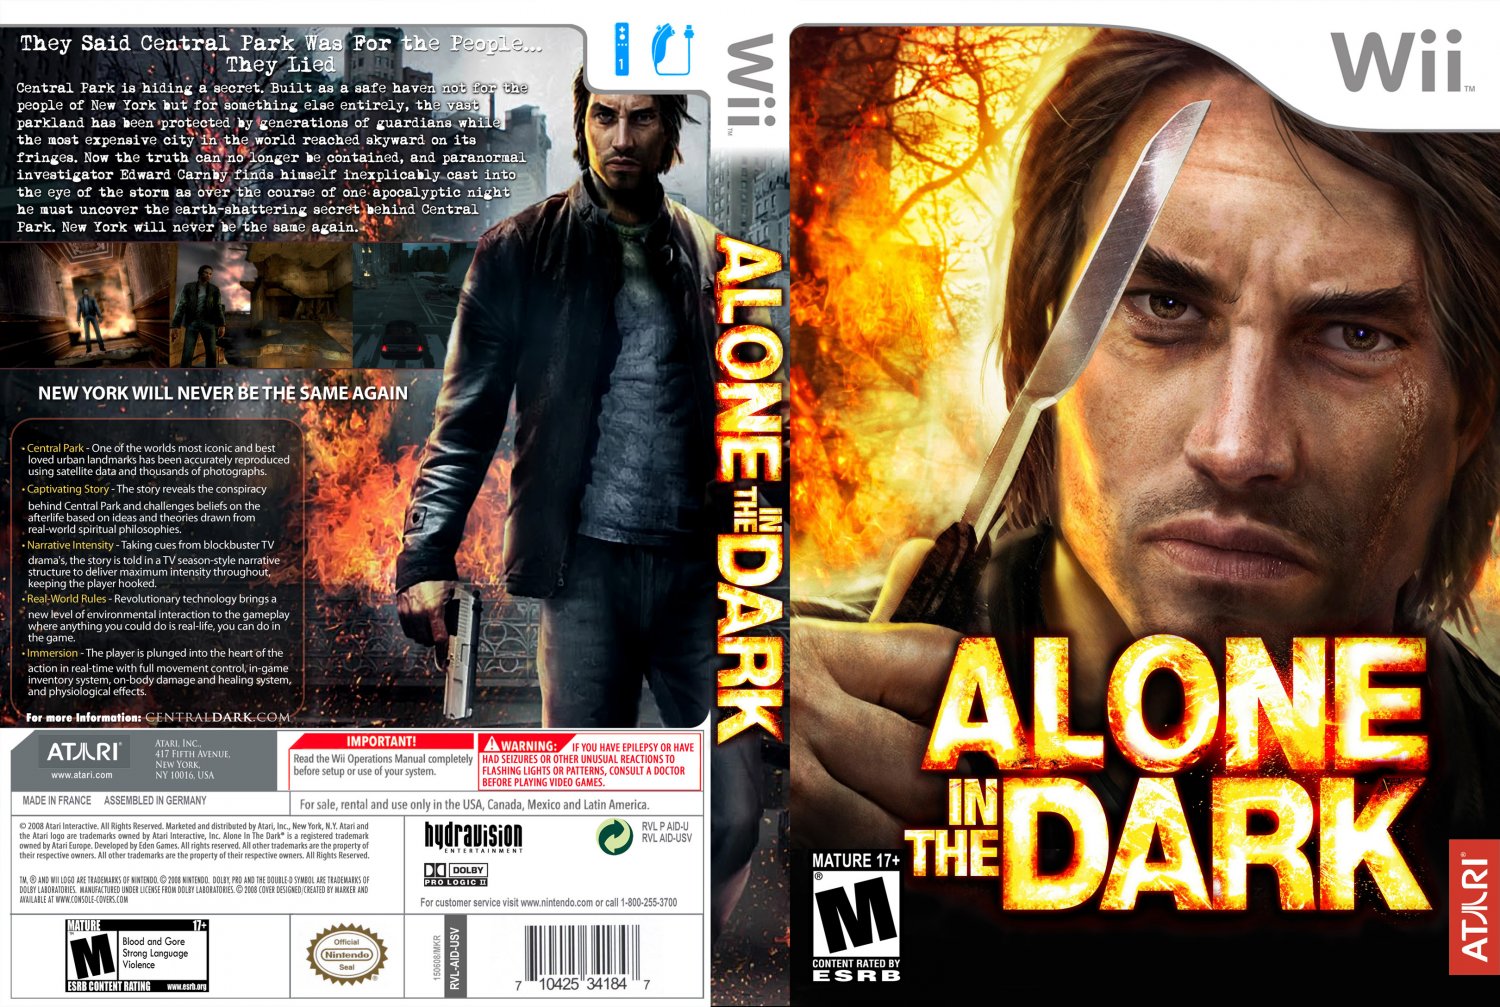 Alone in the dark steam купить. Alone in the Dark Cover. Alone in the Dark обложка. Alone in the Dark (Xbox 360). Alone in the Dark 1.